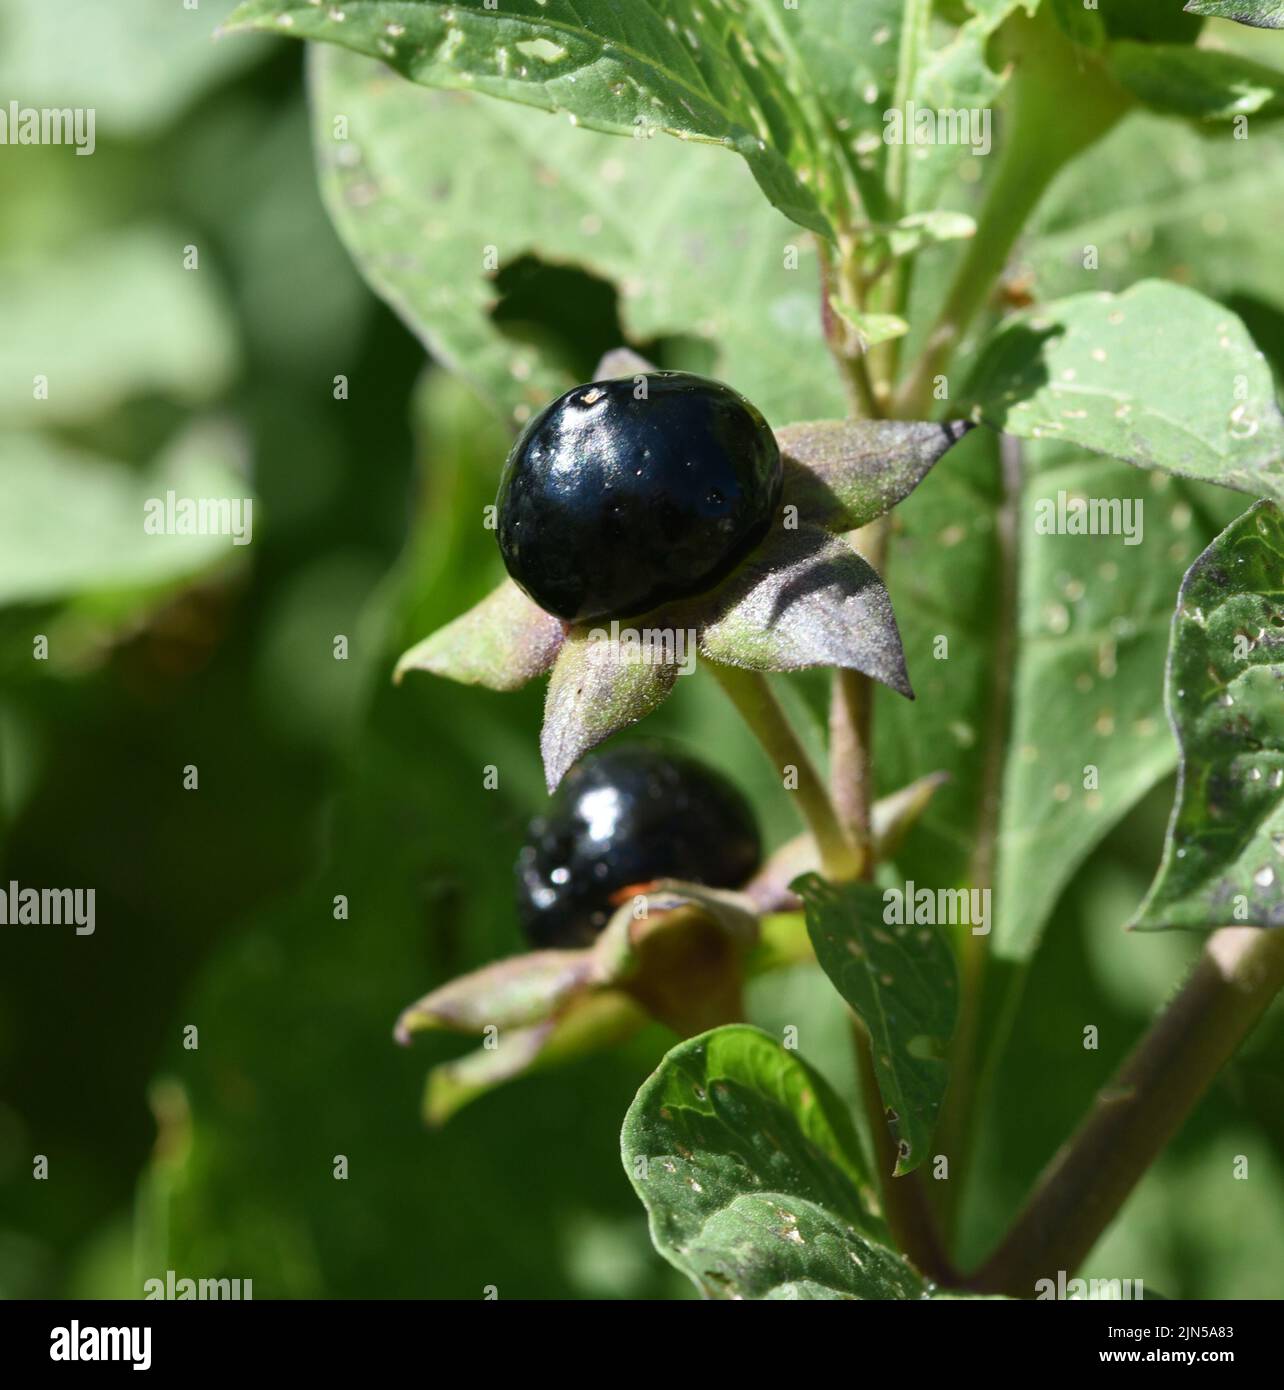 Tollkirsche, Atropa Bella-donna, hat schwarze Beeren und ist eine Gift-und Heilpflanze. Mortal Nightshade, Atropa bella-donna, tiene bayas negras y yo Foto de stock